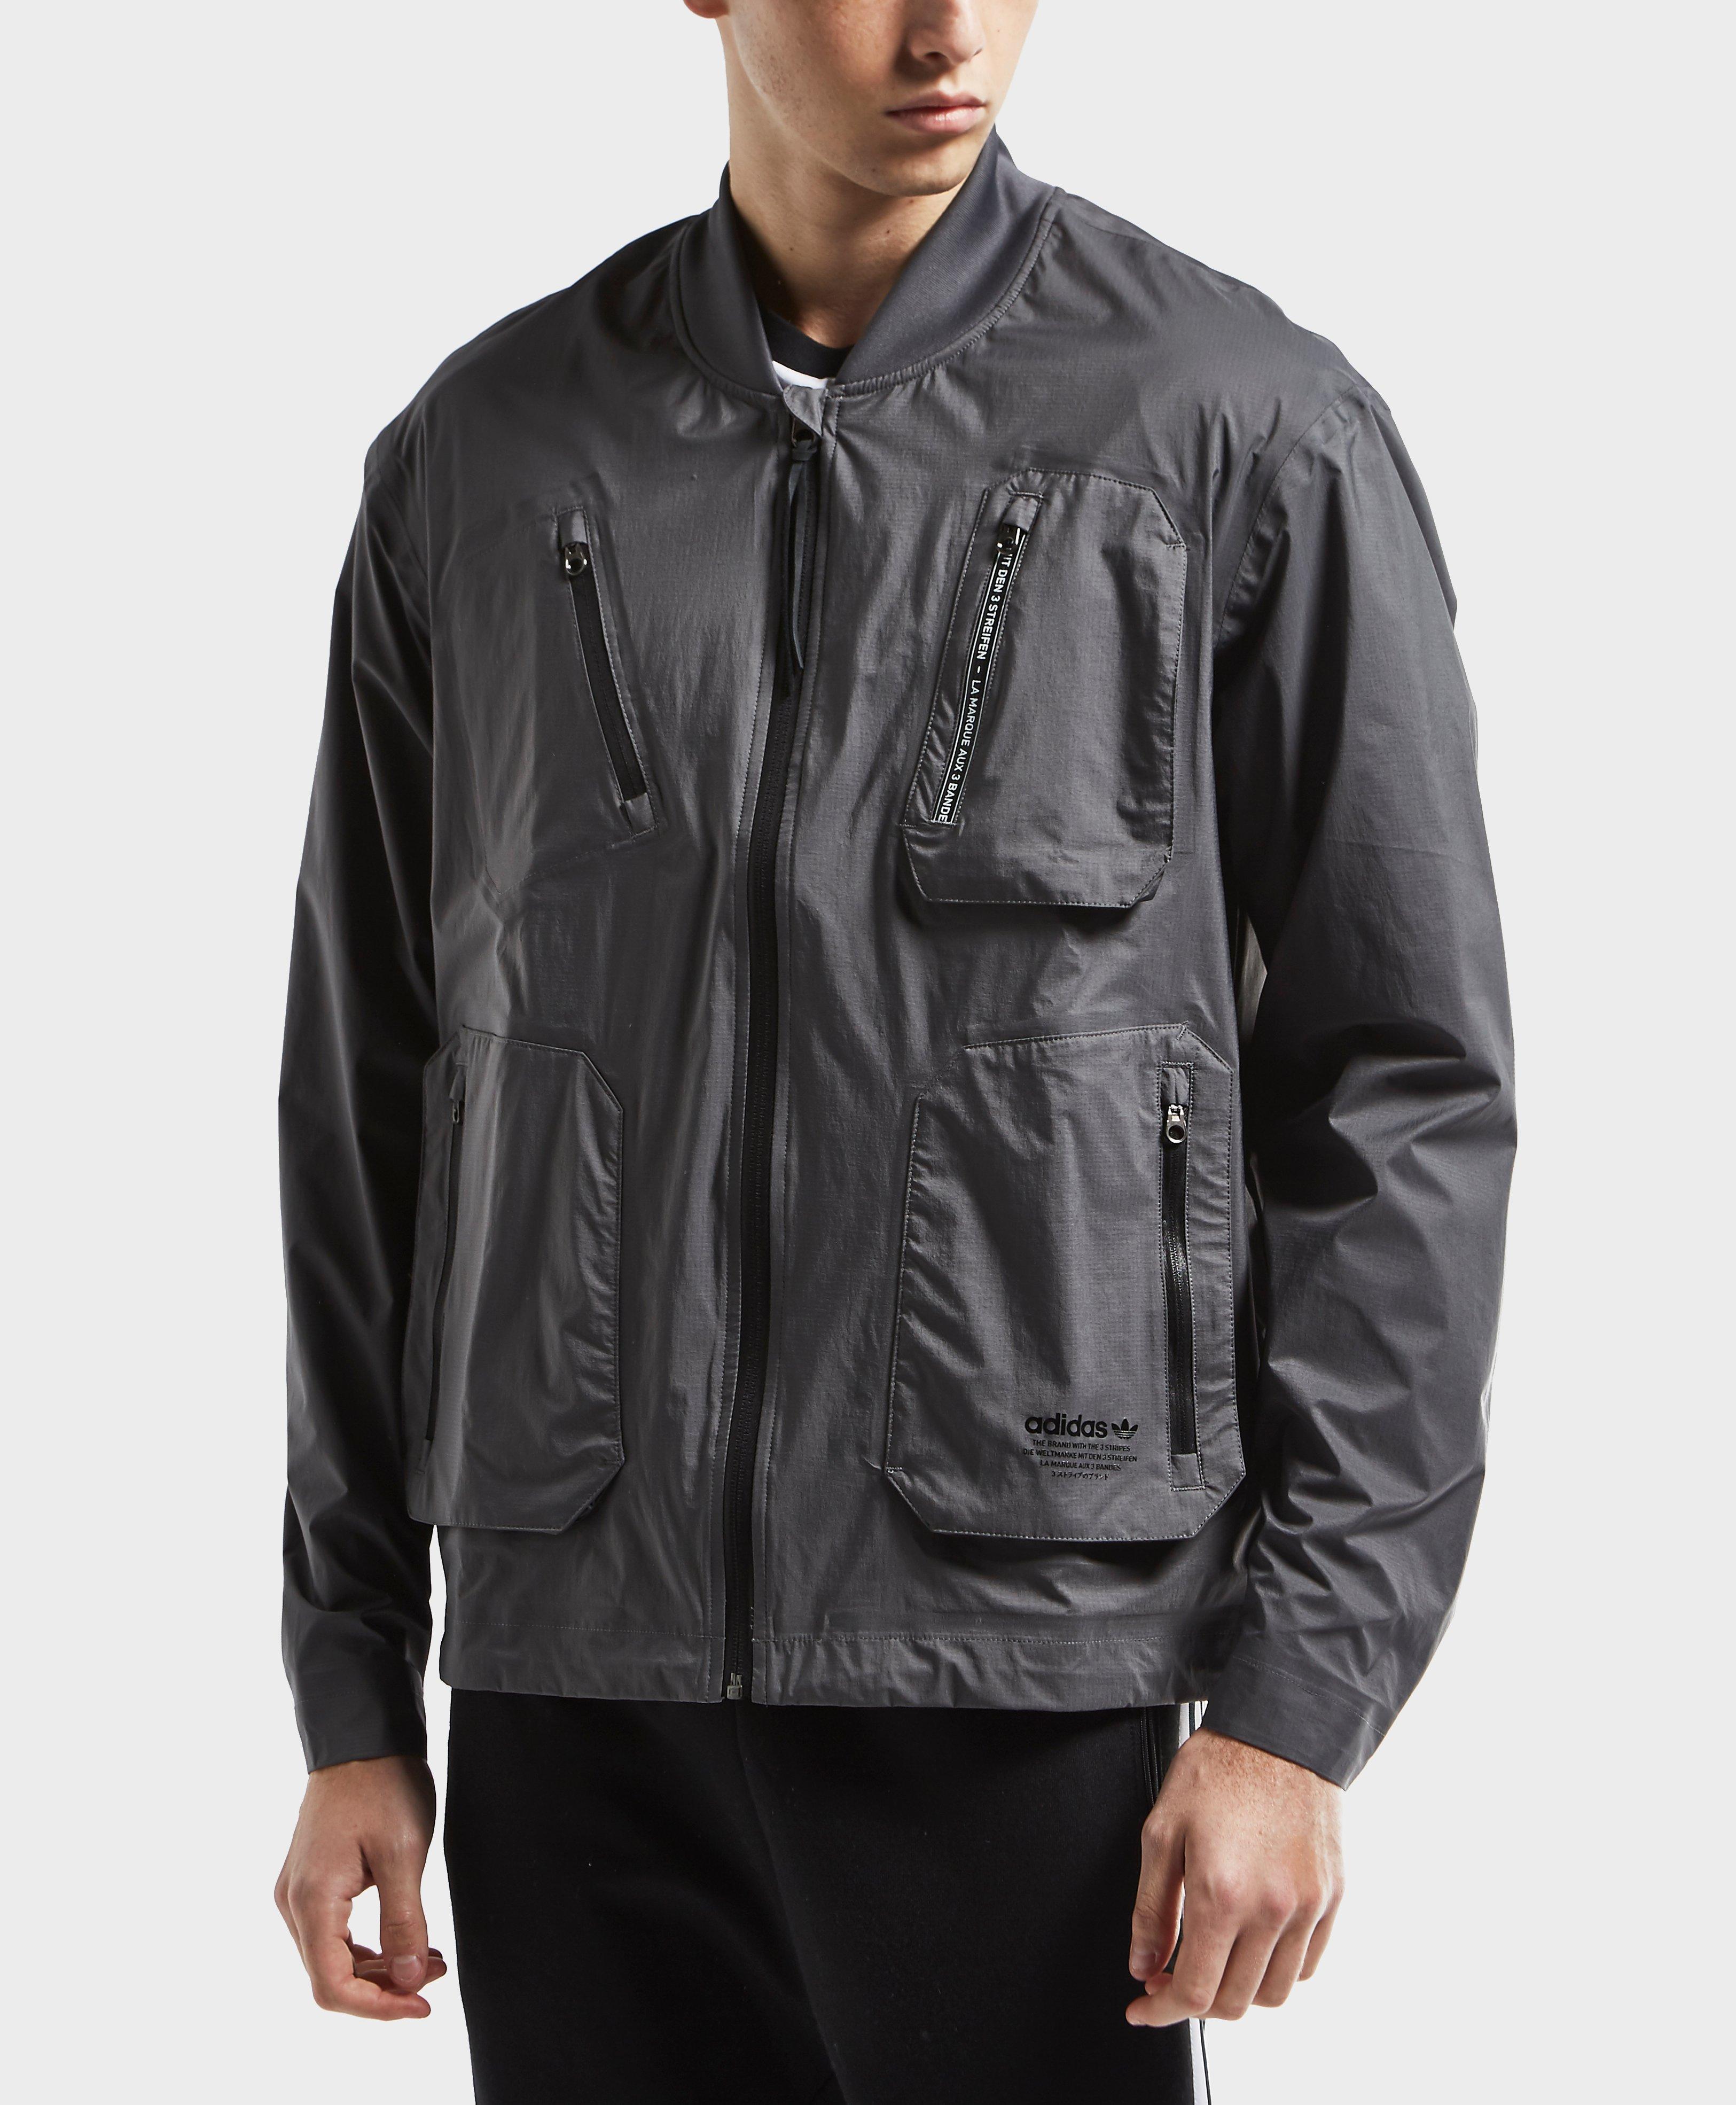 adidas nmd padded bomber jacket,yasserchemicals.com